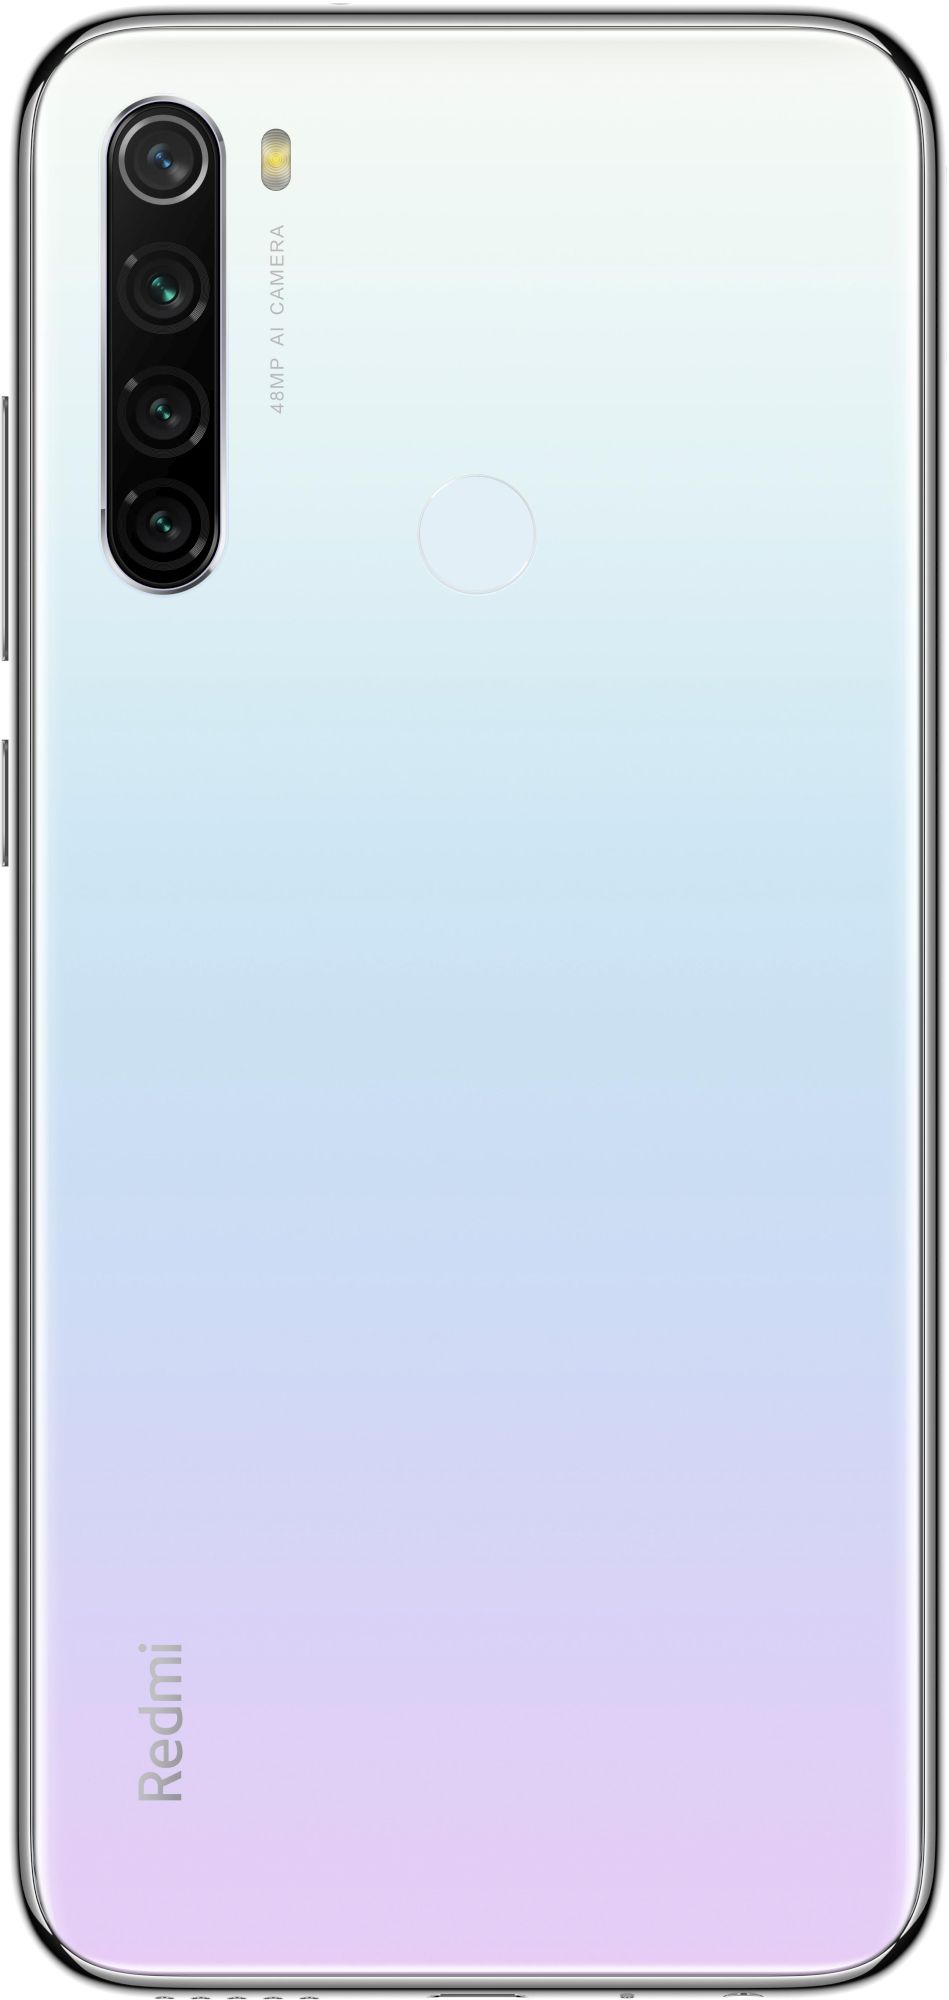 Xiaomi Redmi Note 8T 64GB white